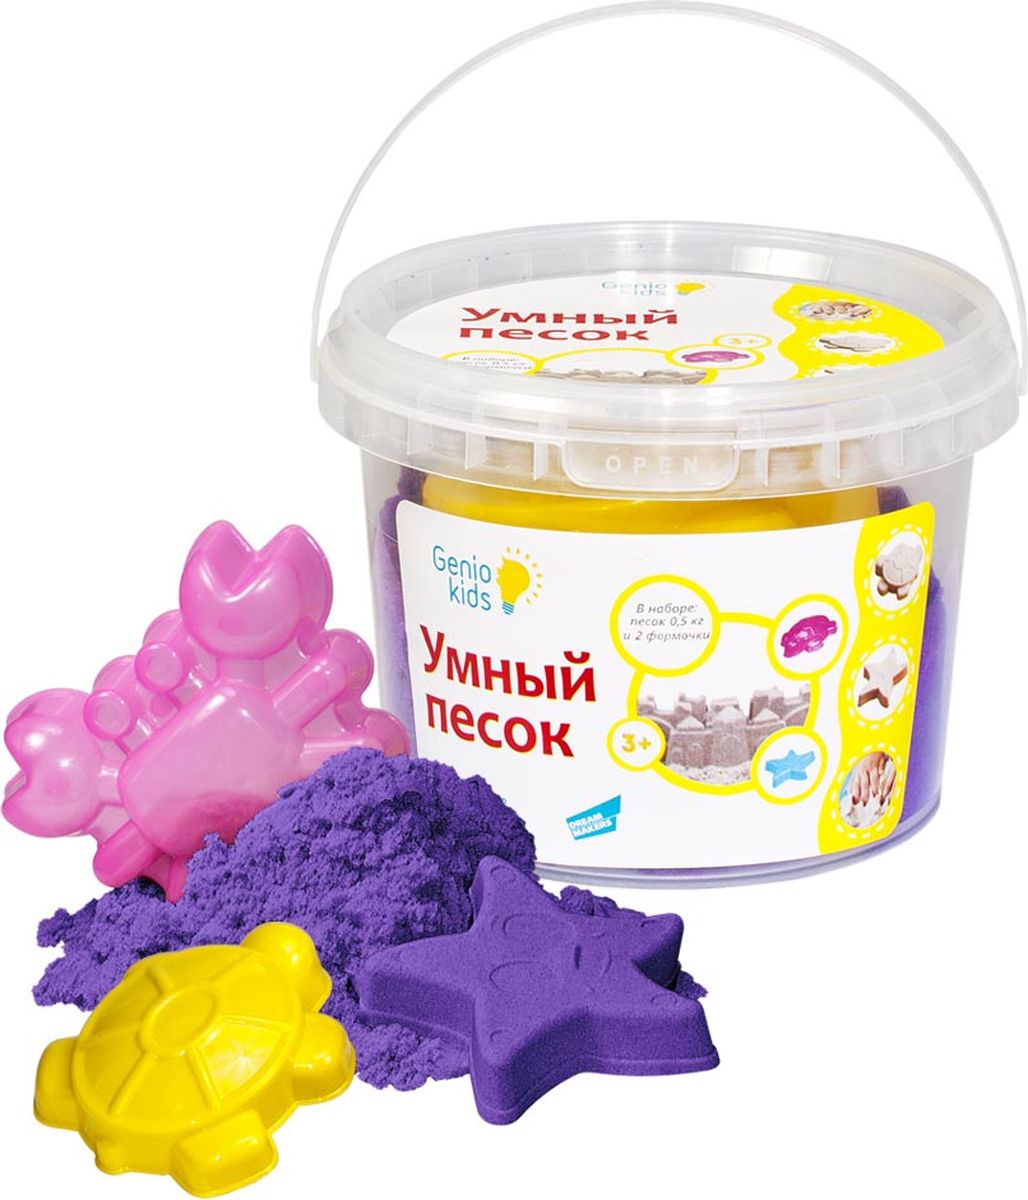 Genio Kids Кинетический песок Умный песок цвет фиолетовый 500 г